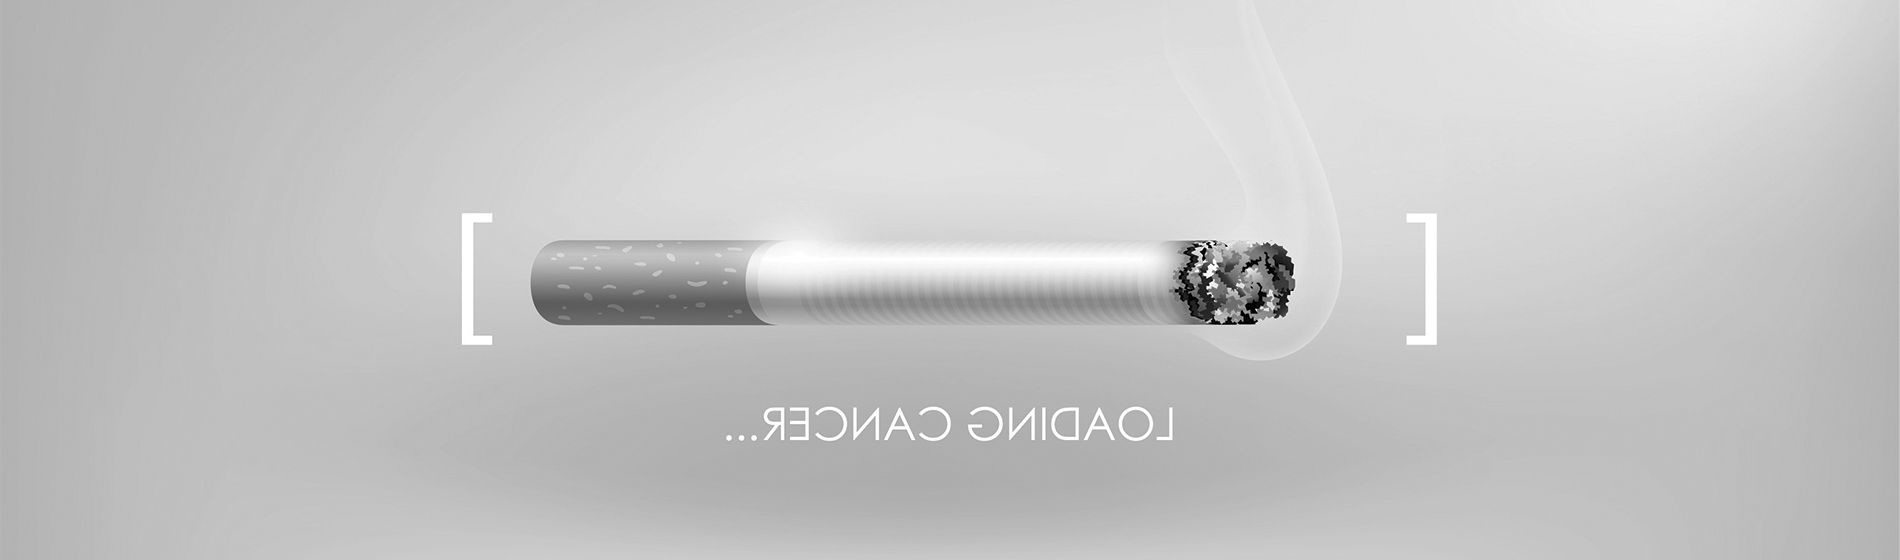 Sevrage tabagique au laser avis